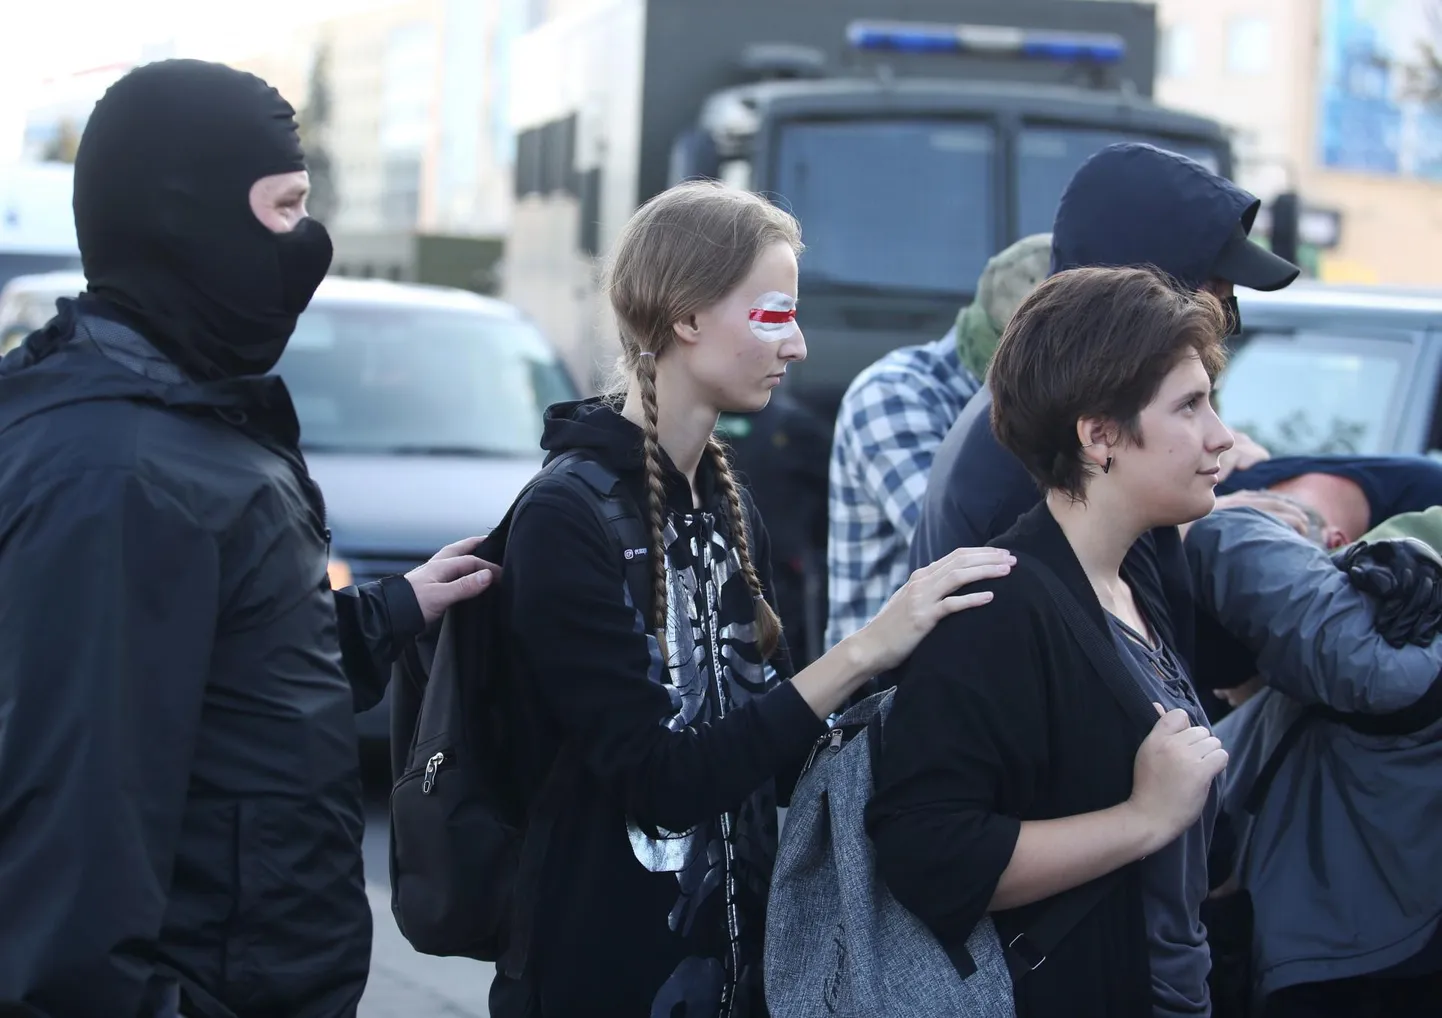 Ka eile jätkusid Minskis rahumeelsed meeleavaldused, kust korrakaitsjad inimesi minema viisid.